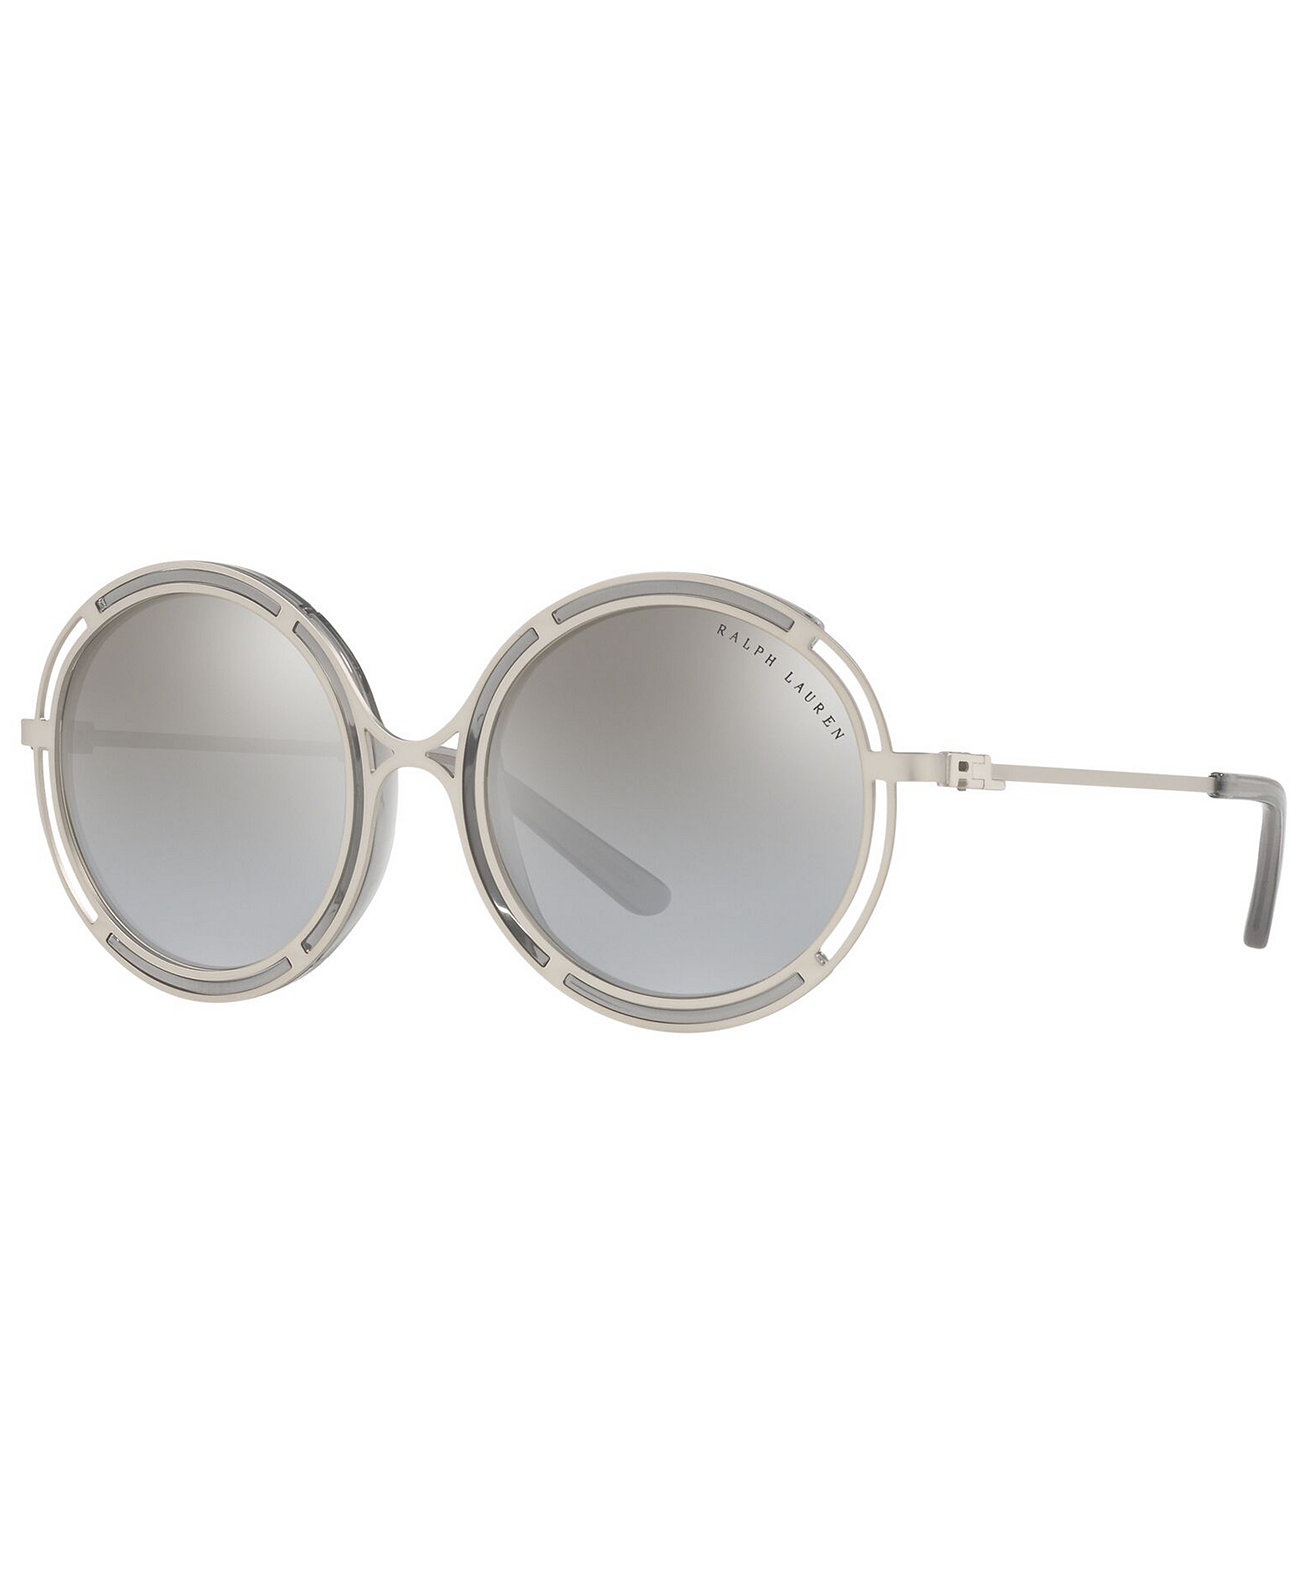 Солнцезащитные очки, RL7060 Ralph Lauren